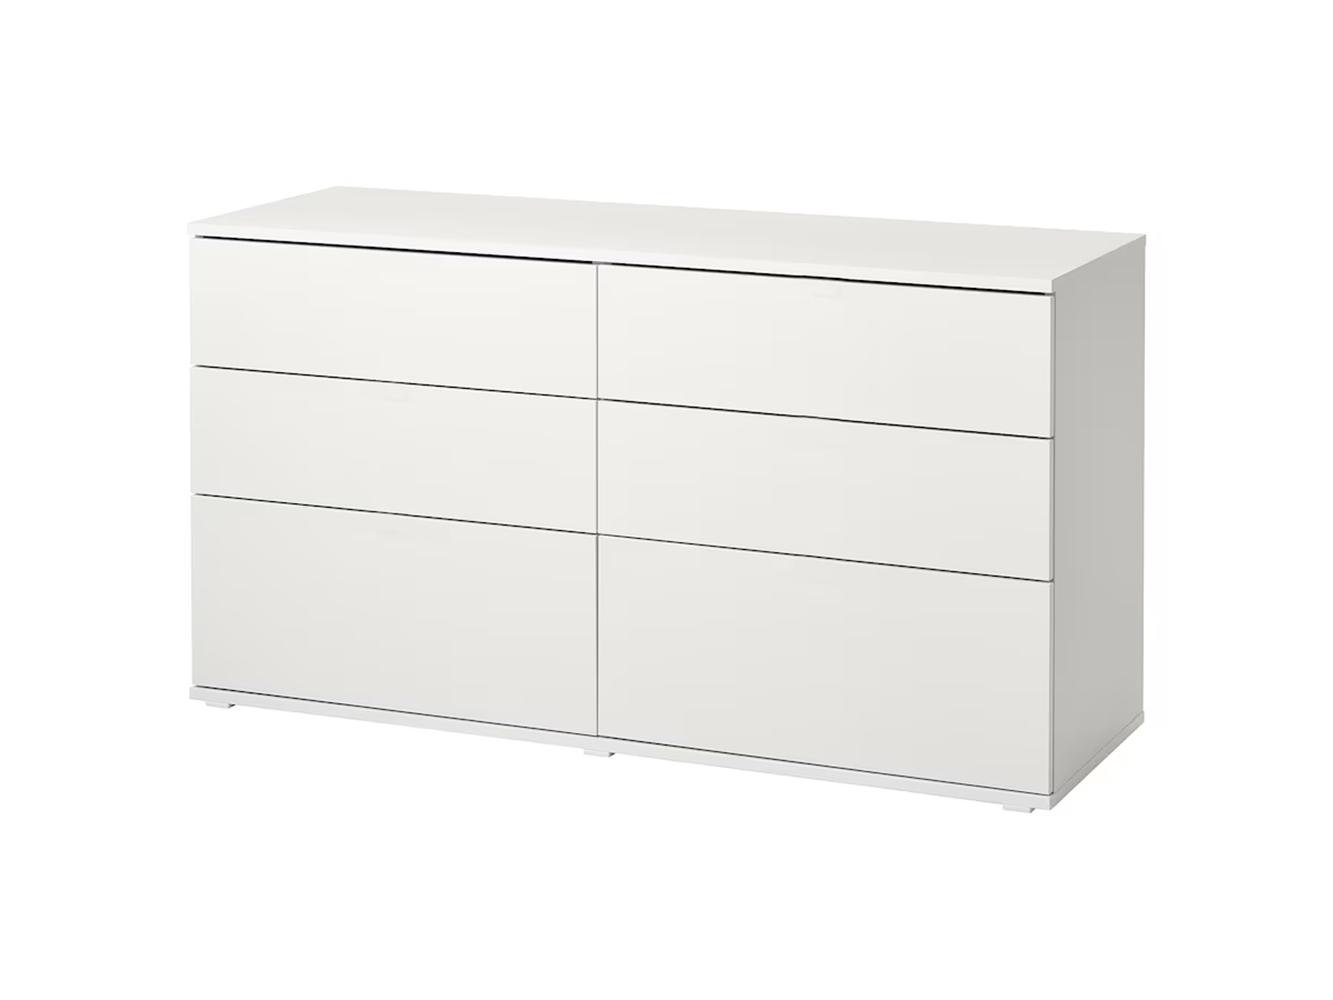 Комод Вихалс 116 white ИКЕА (IKEA) изображение товара